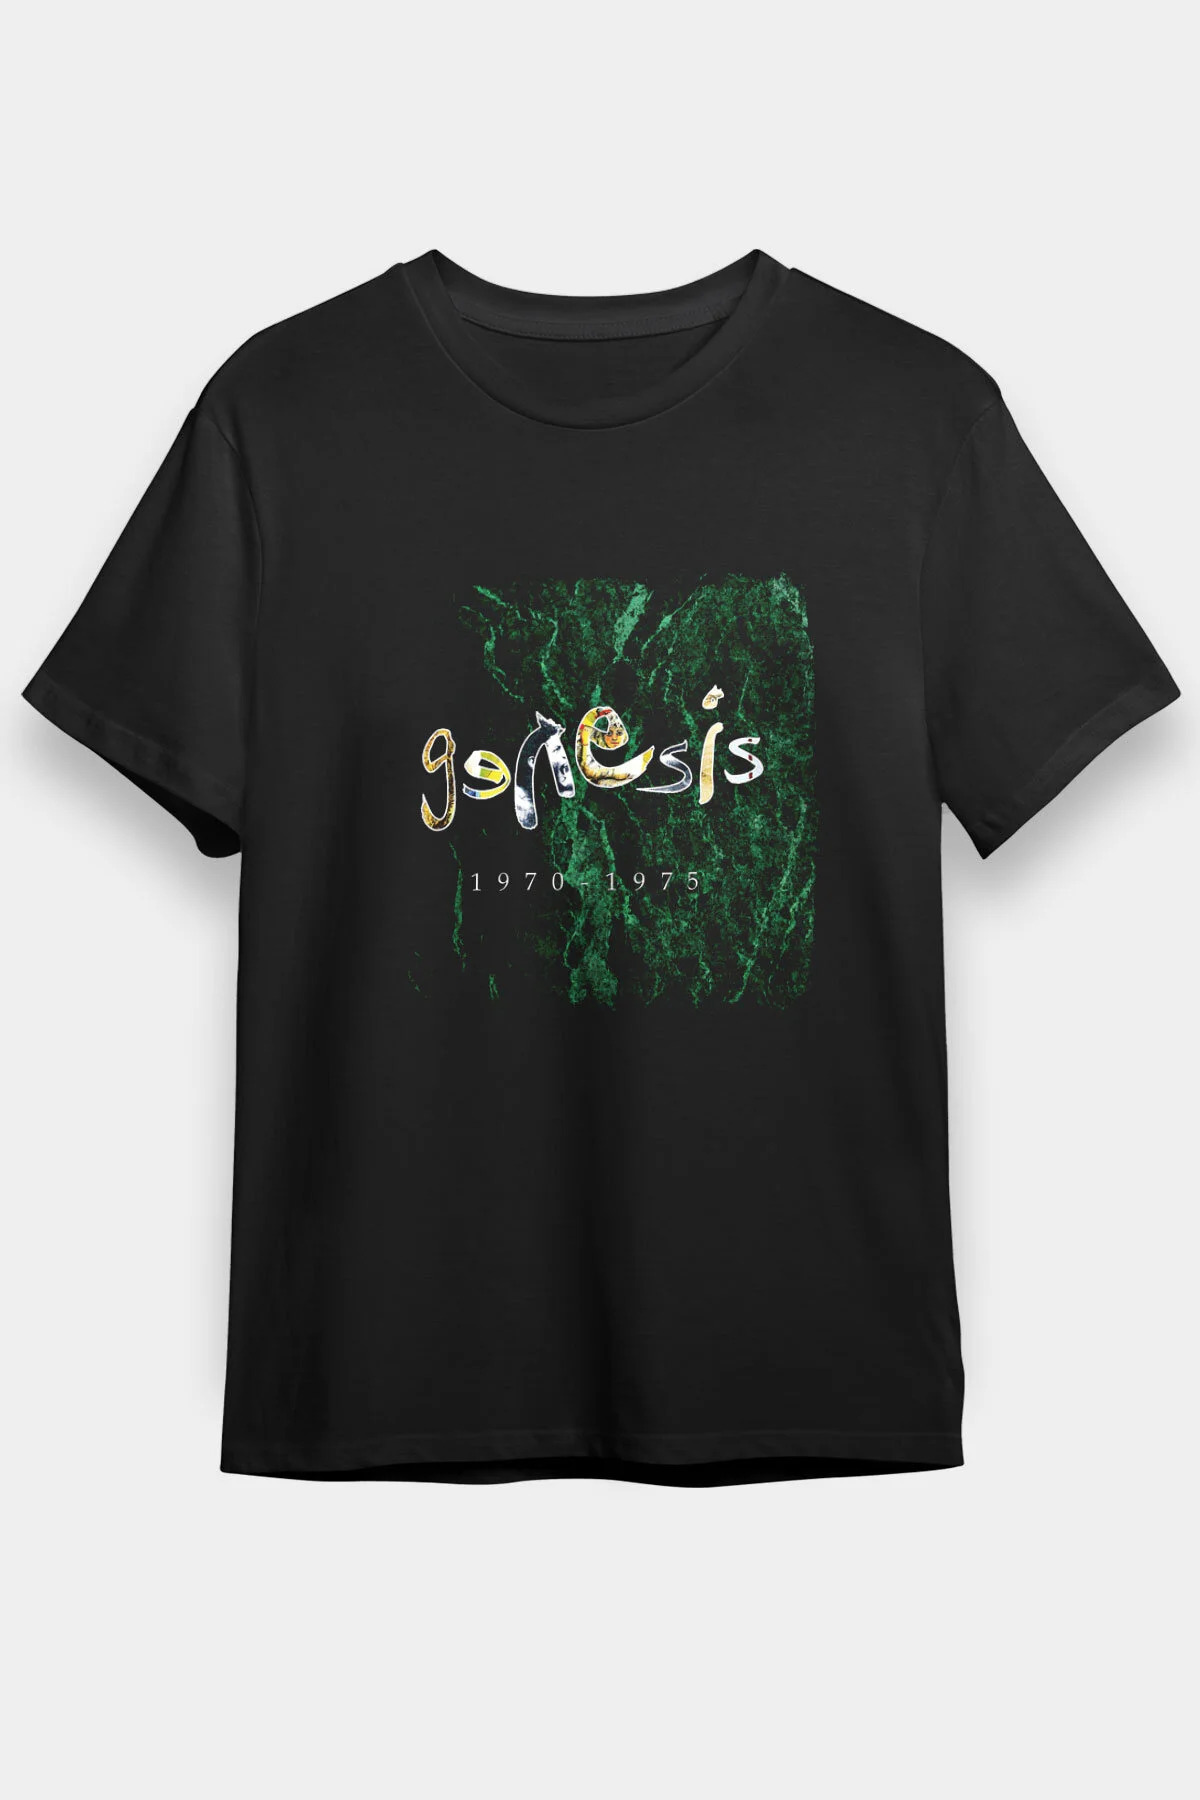 Genesis T shirt , Music Band ,Unisex Tshirt 08